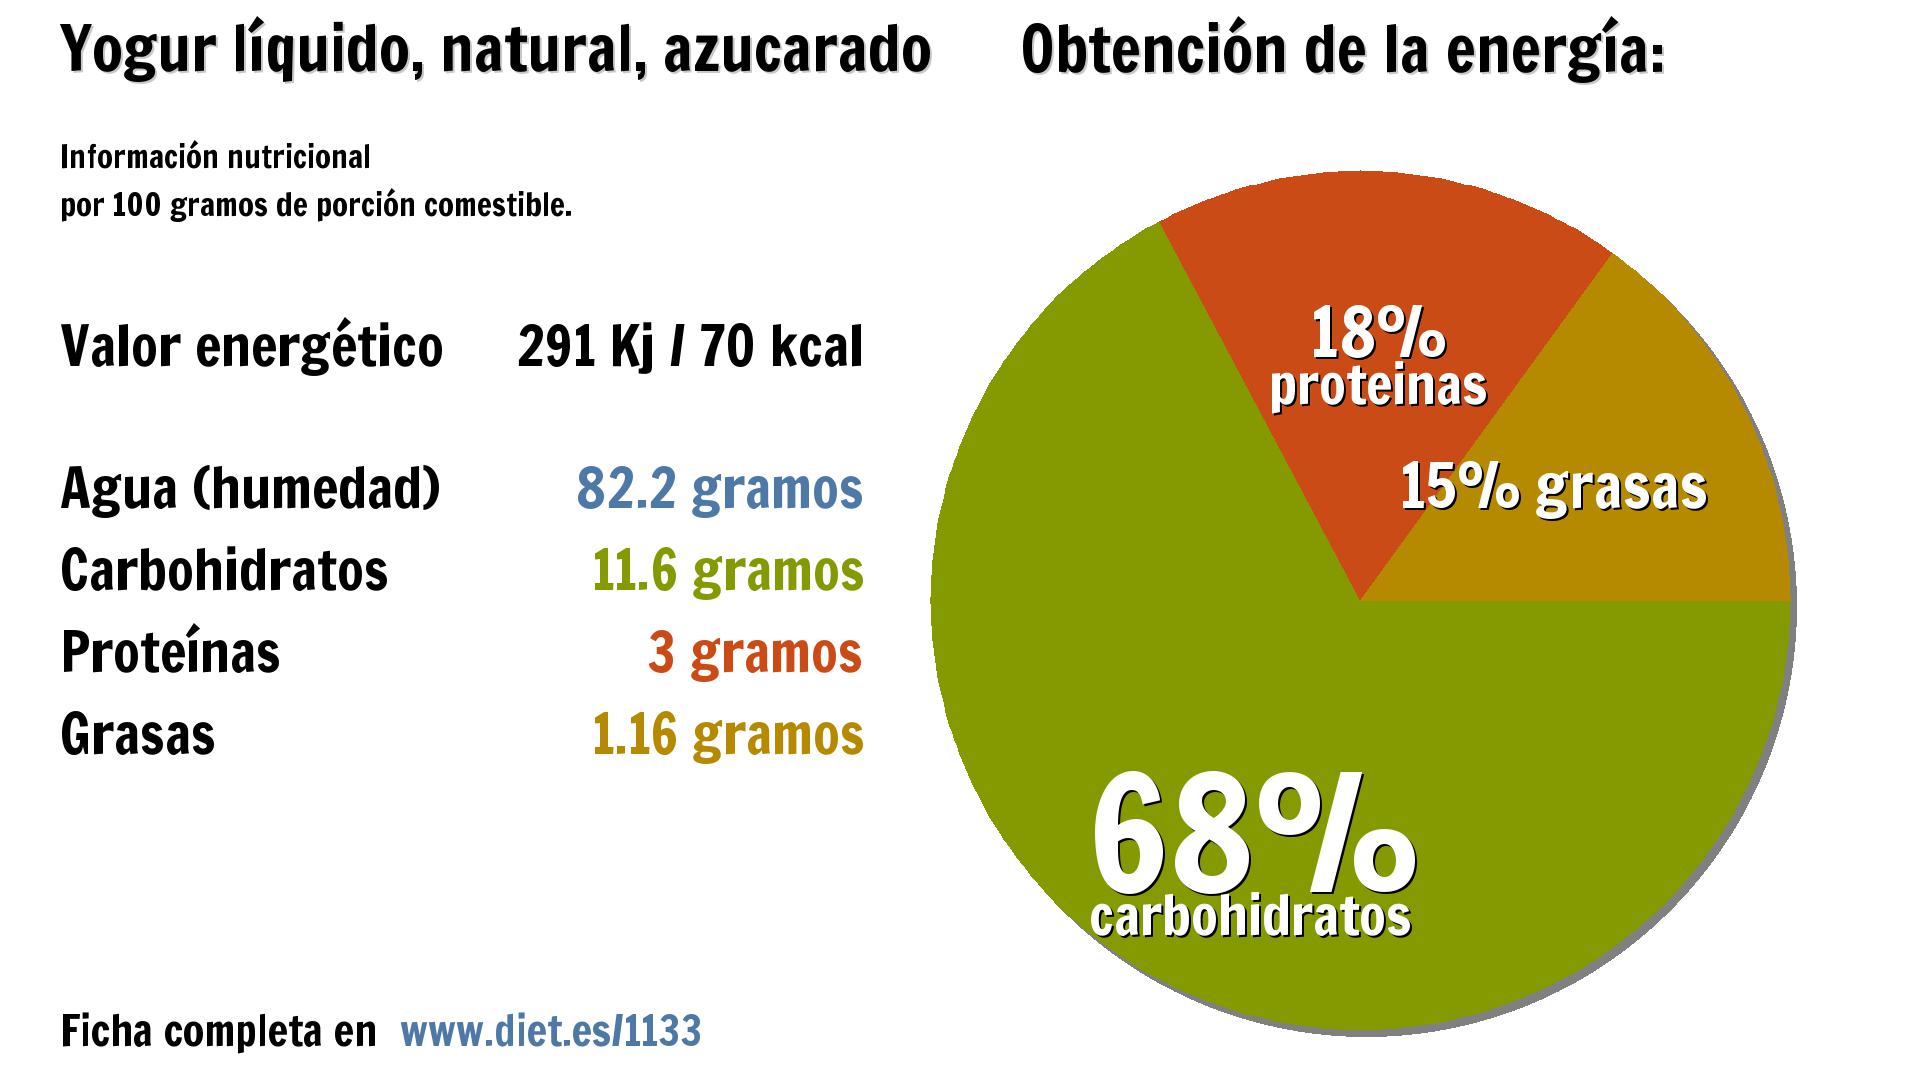 Yogur líquido, natural, azucarado: energía 291 Kj, agua 82 g., carbohidratos 12 g., proteínas 3 g. y grasas 1 g.